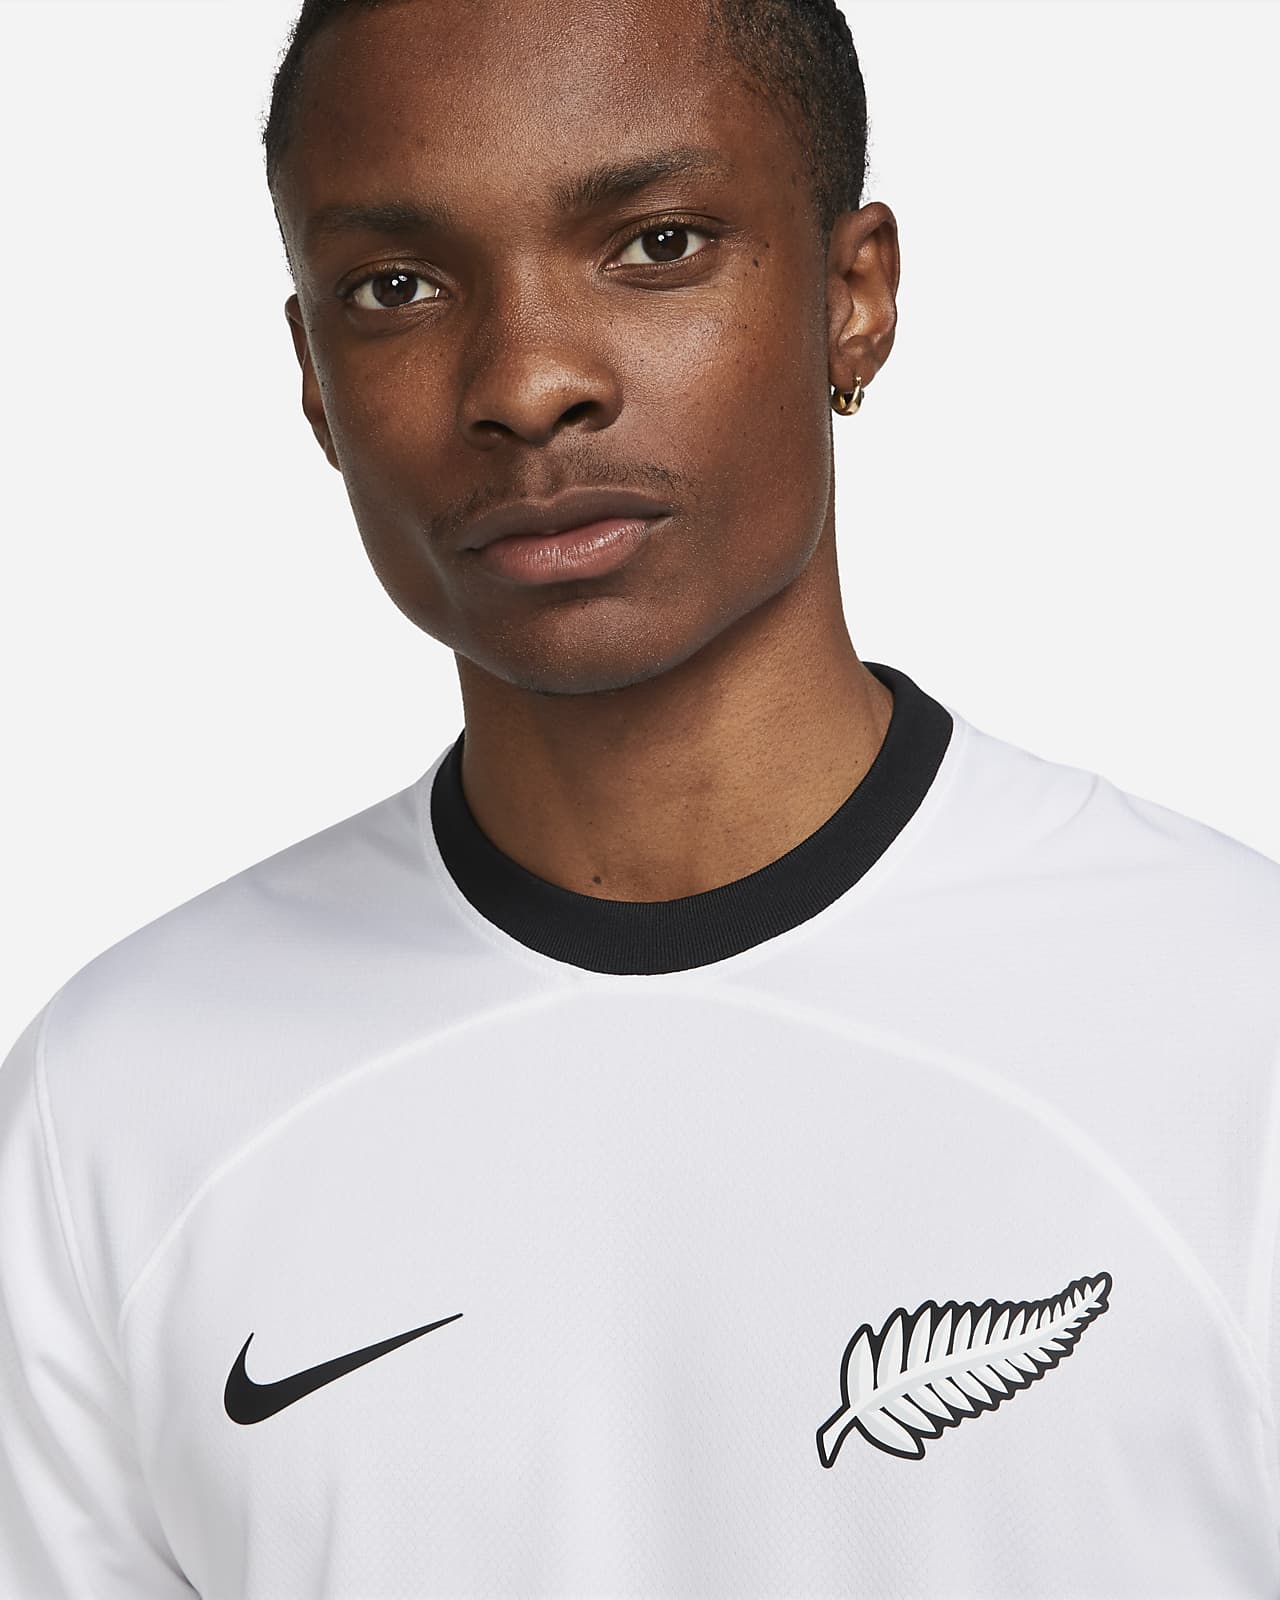 intelligentie herhaling Verrijken New Zealand 2022/23 Stadium Home Men's Nike Dri-FIT Soccer Jersey. Nike.com